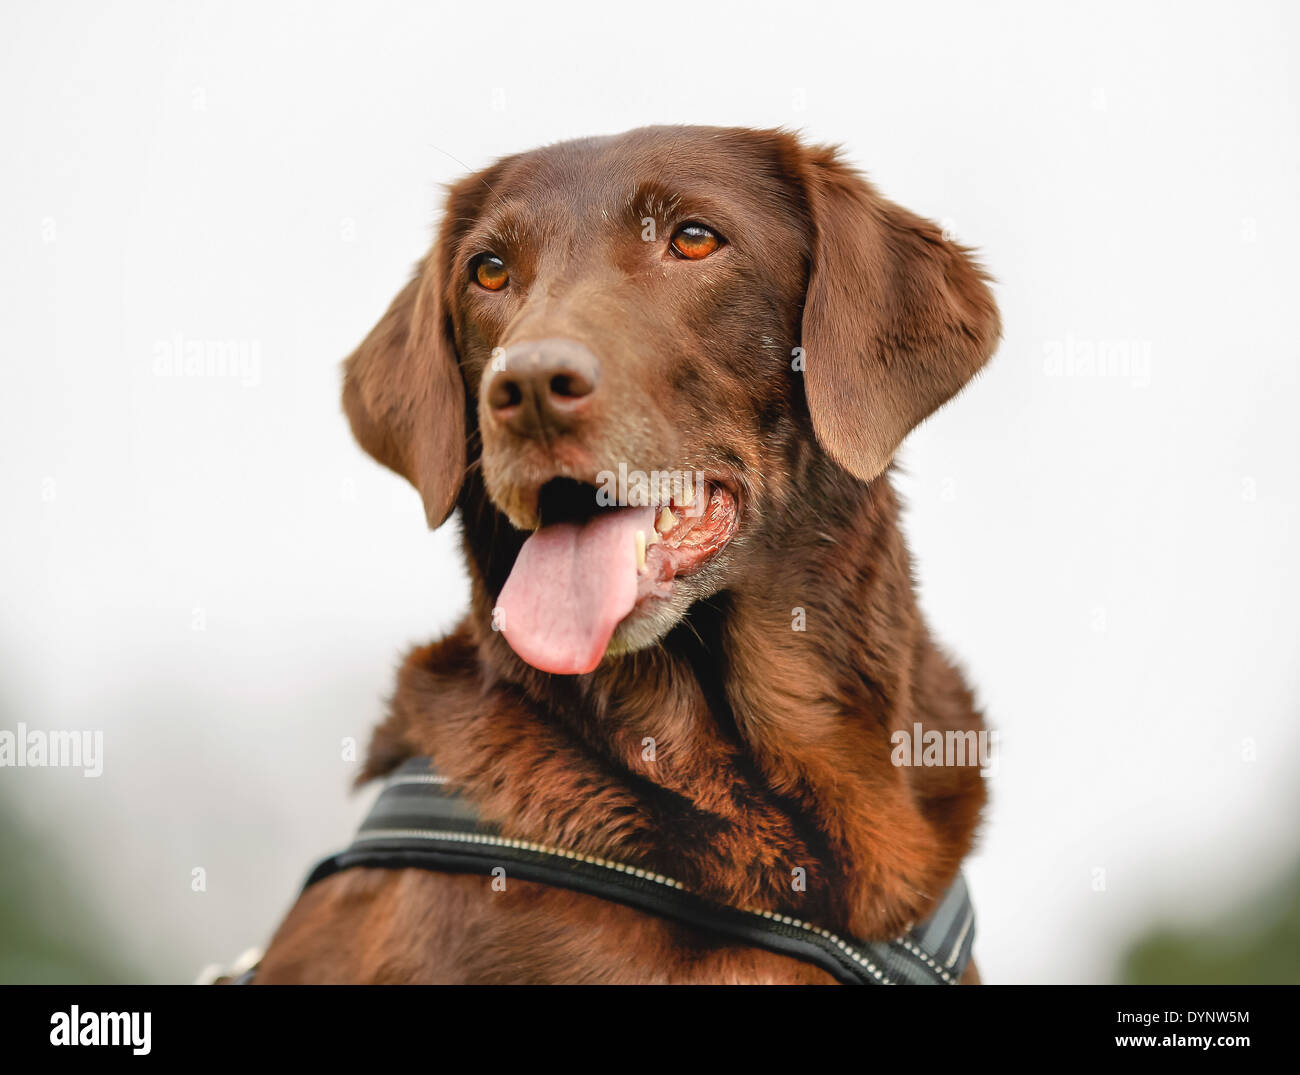 Close-up of purebred brown labrador retriever dog. Stock Photo